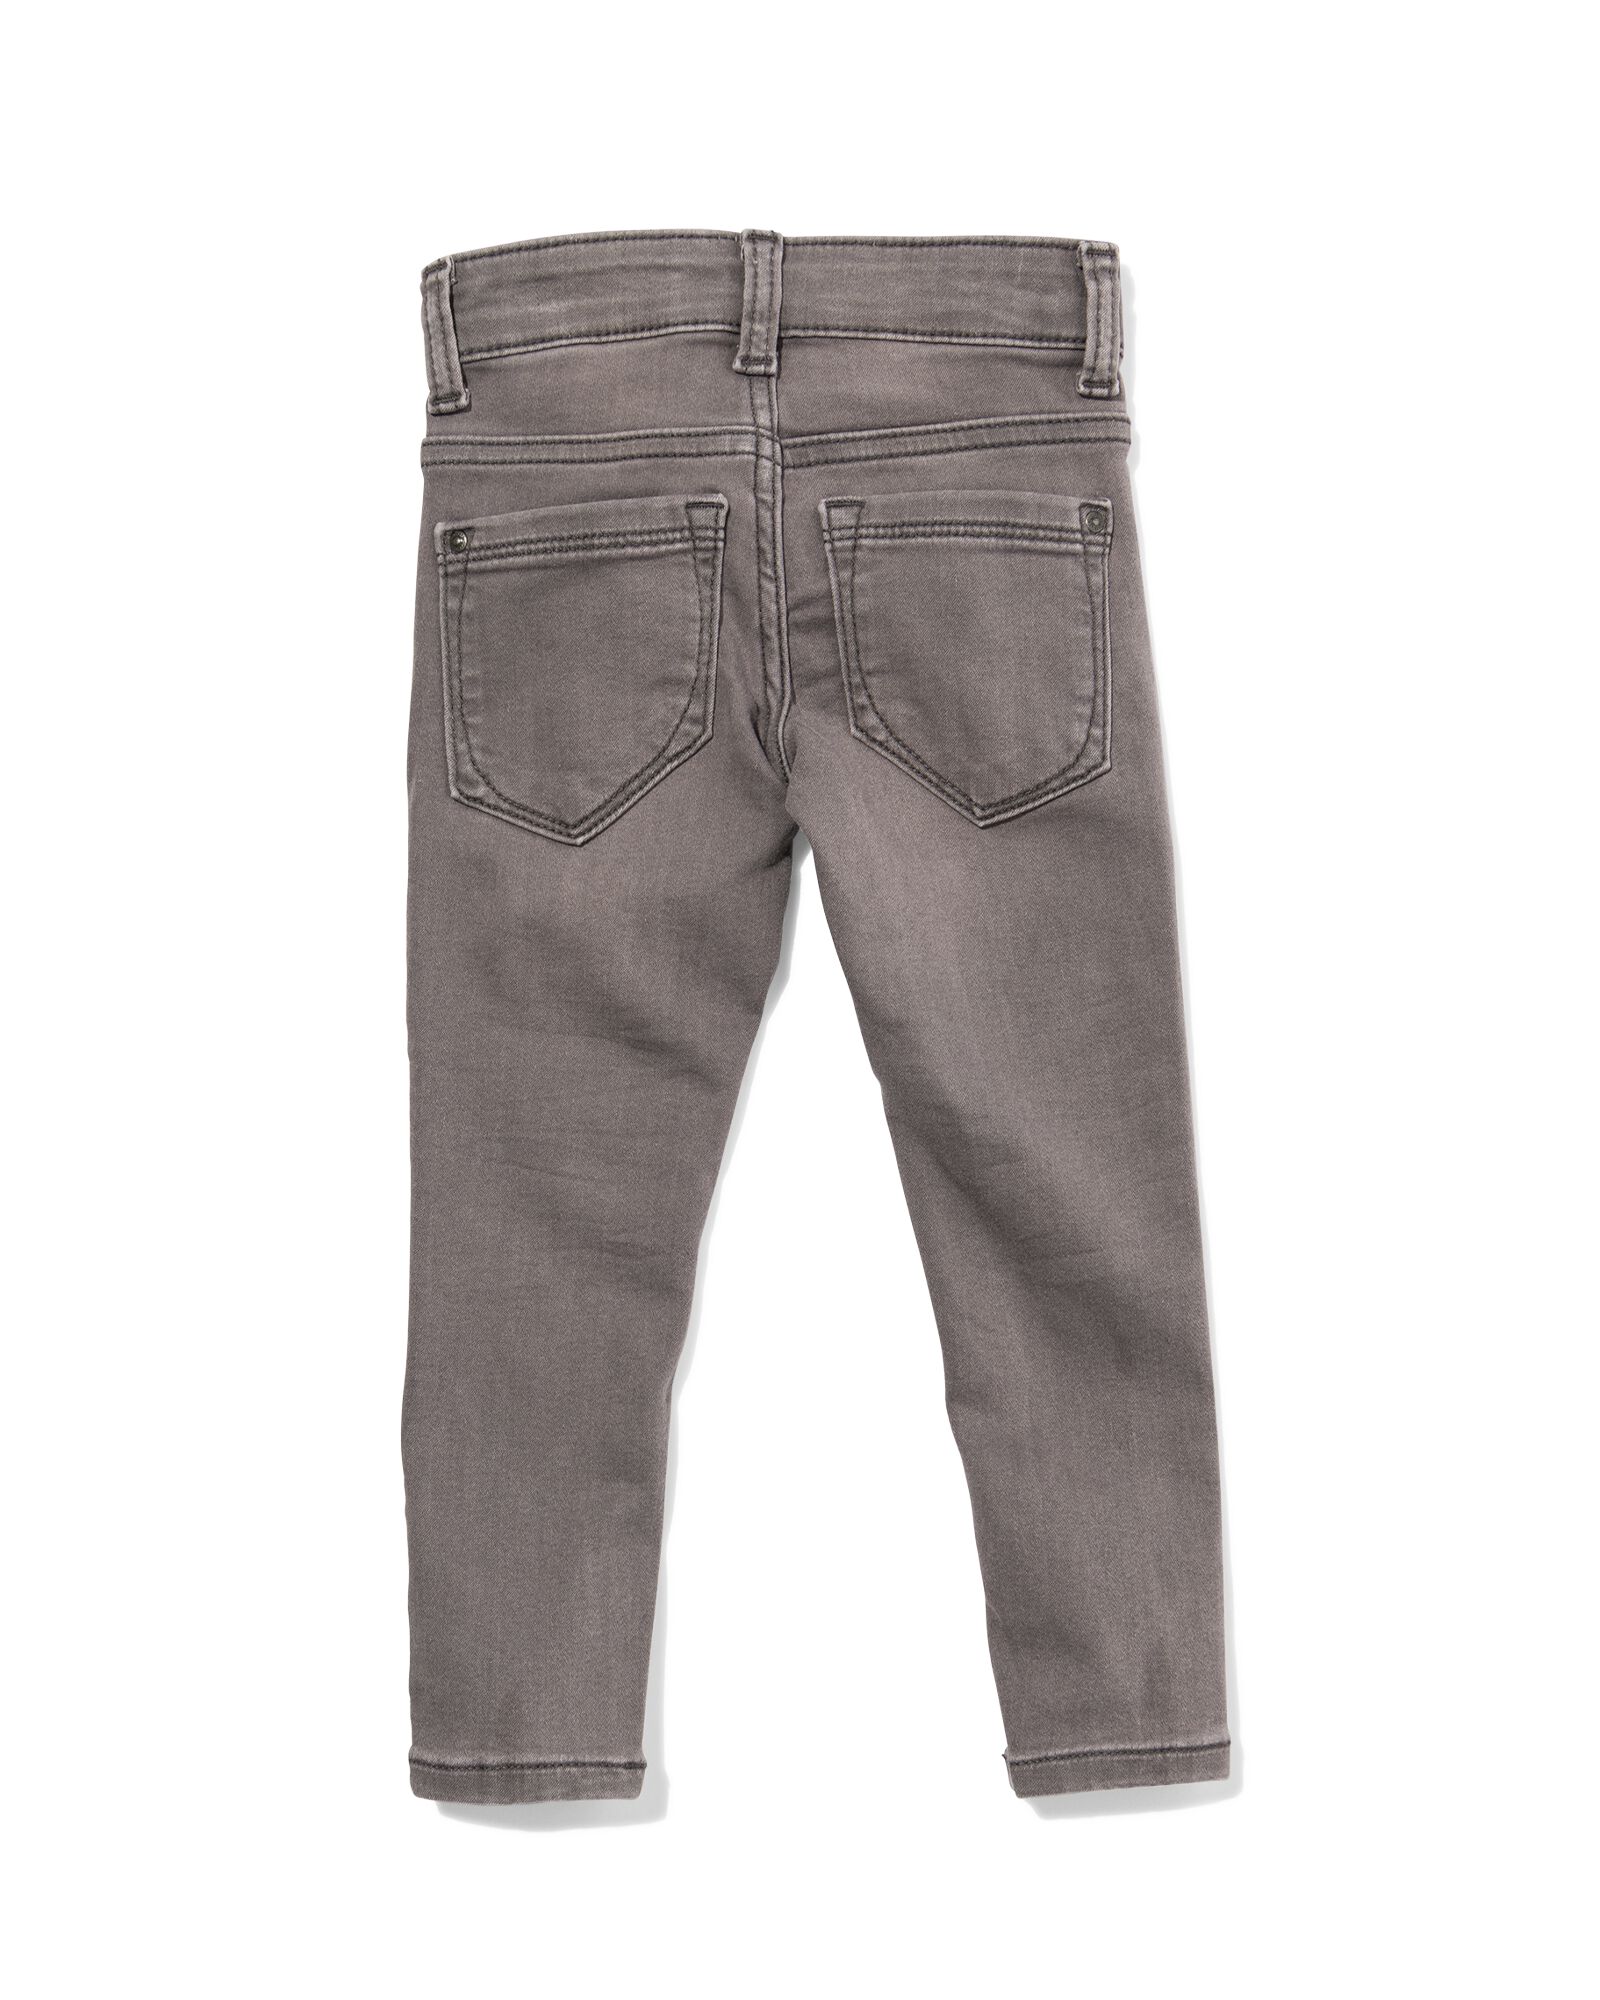 kinder jeans skinny fit grijs 152 - 30874881 - HEMA